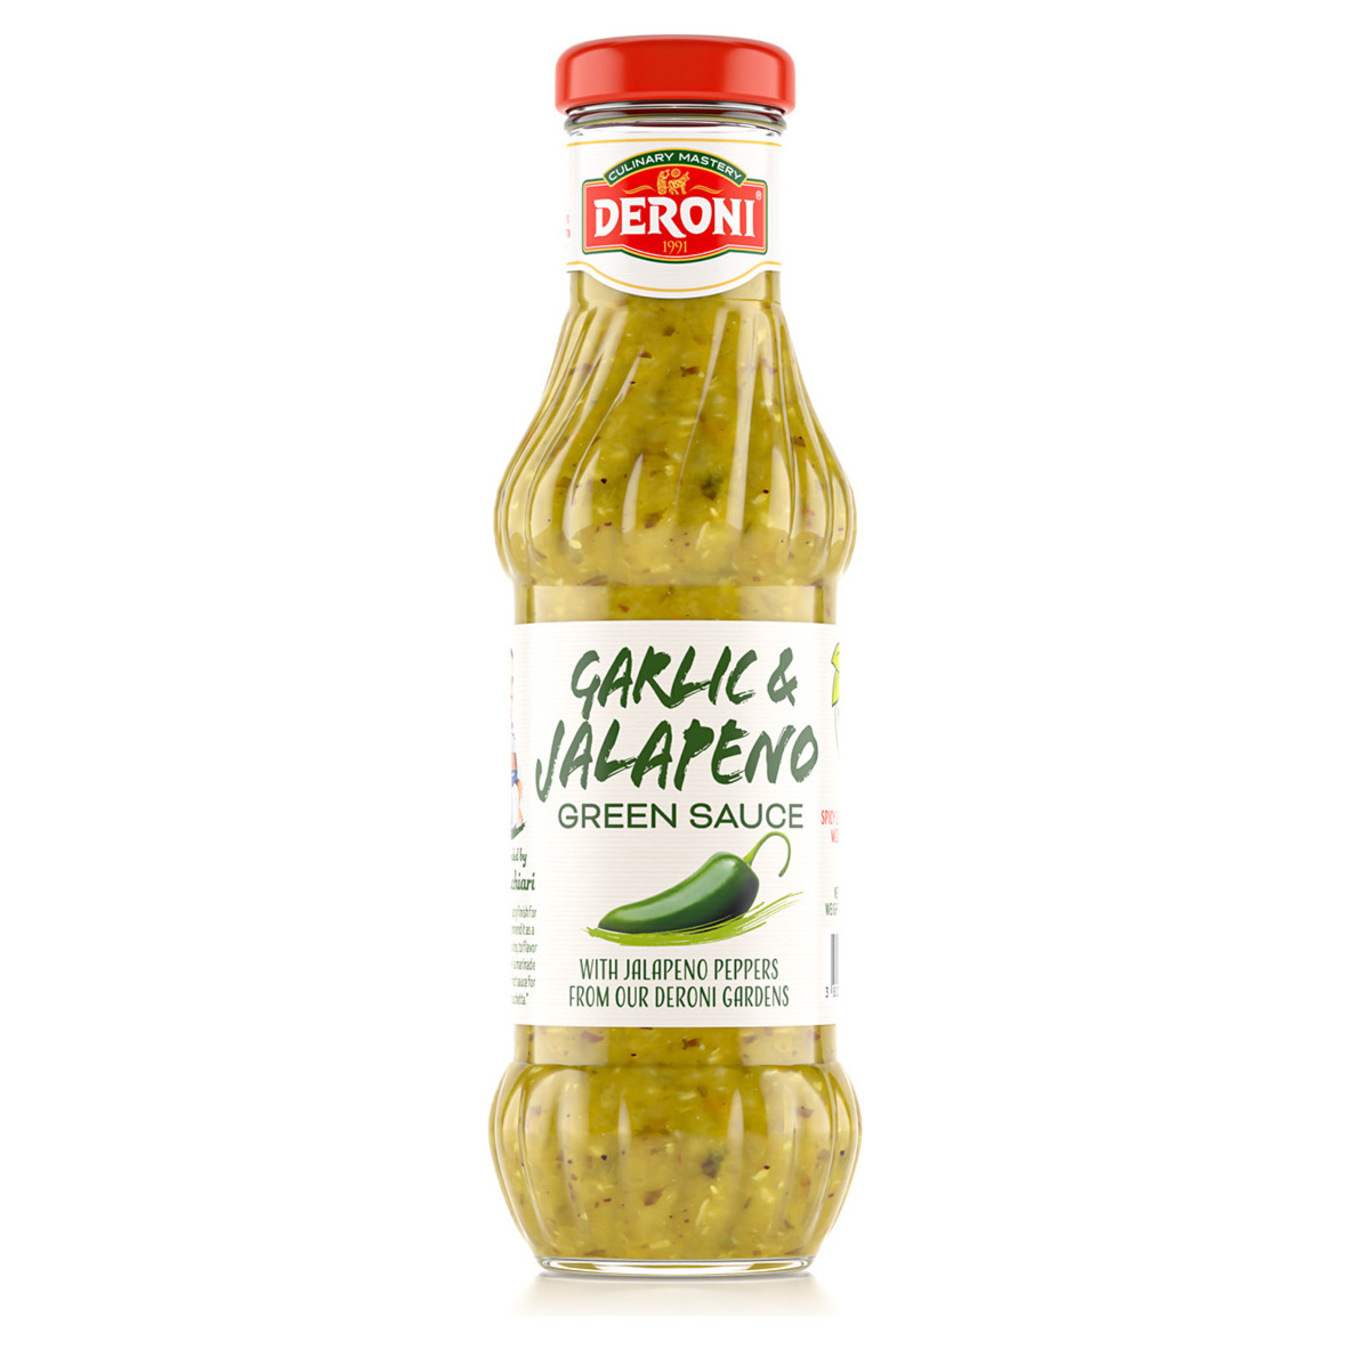 Deroni hot sauce with garlic and jalapeño 315g